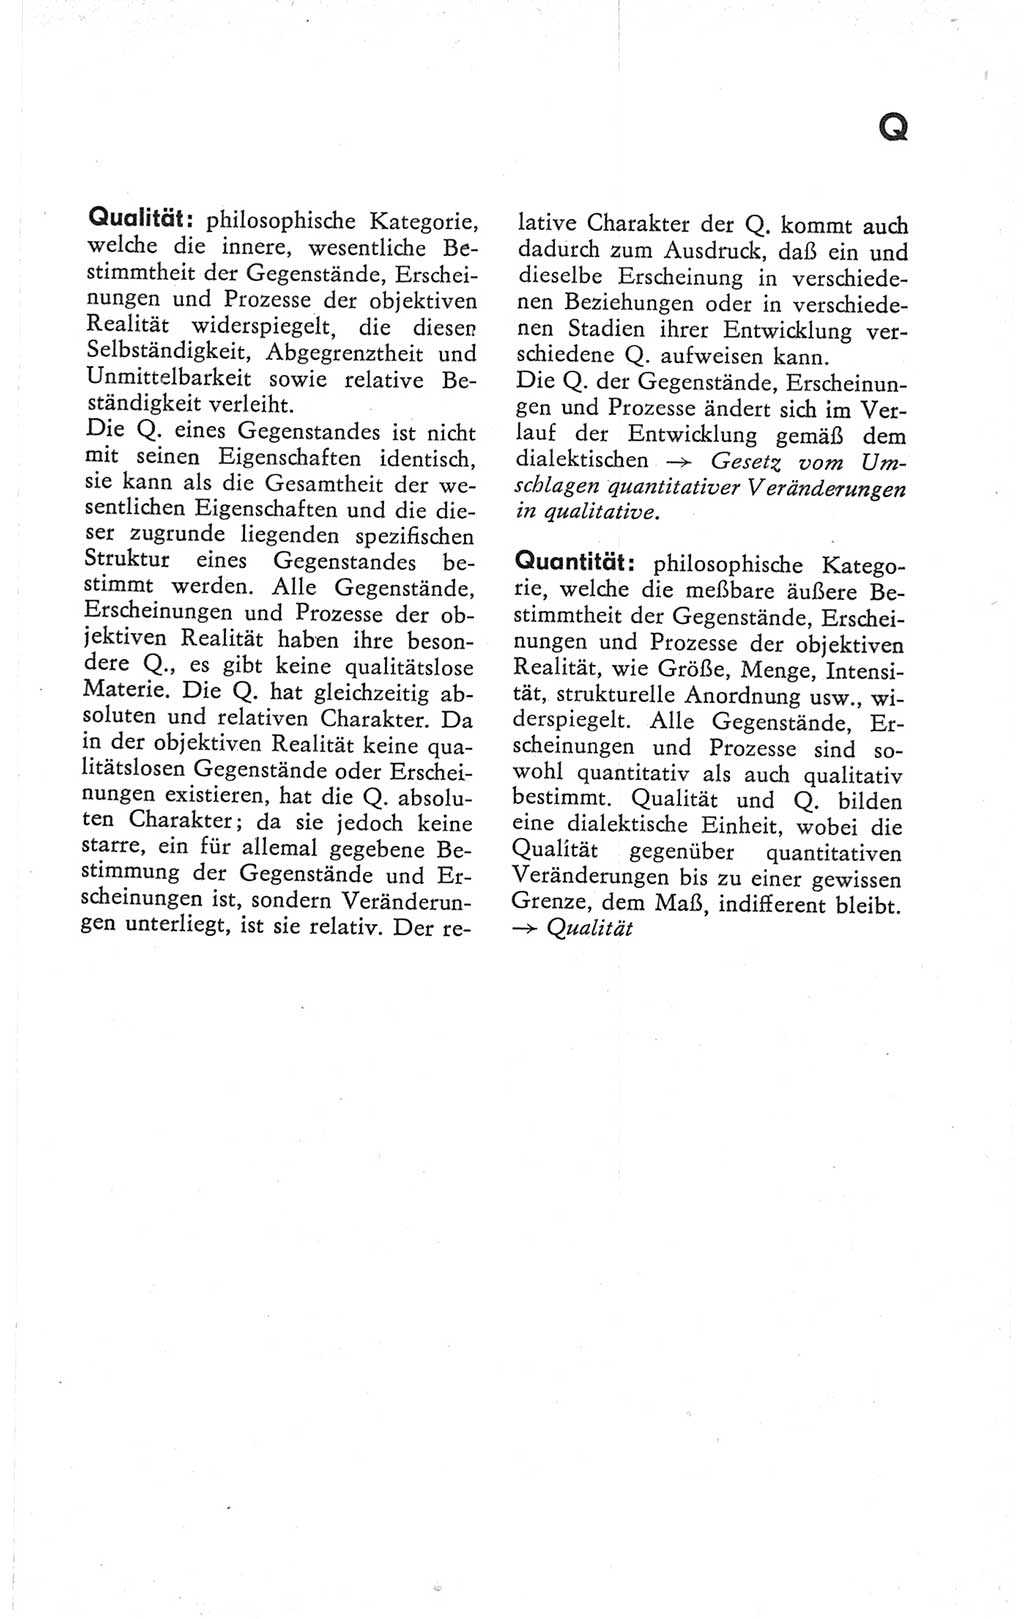 Kleines Wörterbuch der marxistisch-leninistischen Philosophie [Deutsche Demokratische Republik (DDR)] 1979, Seite 273 (Kl. Wb. ML Phil. DDR 1979, S. 273)